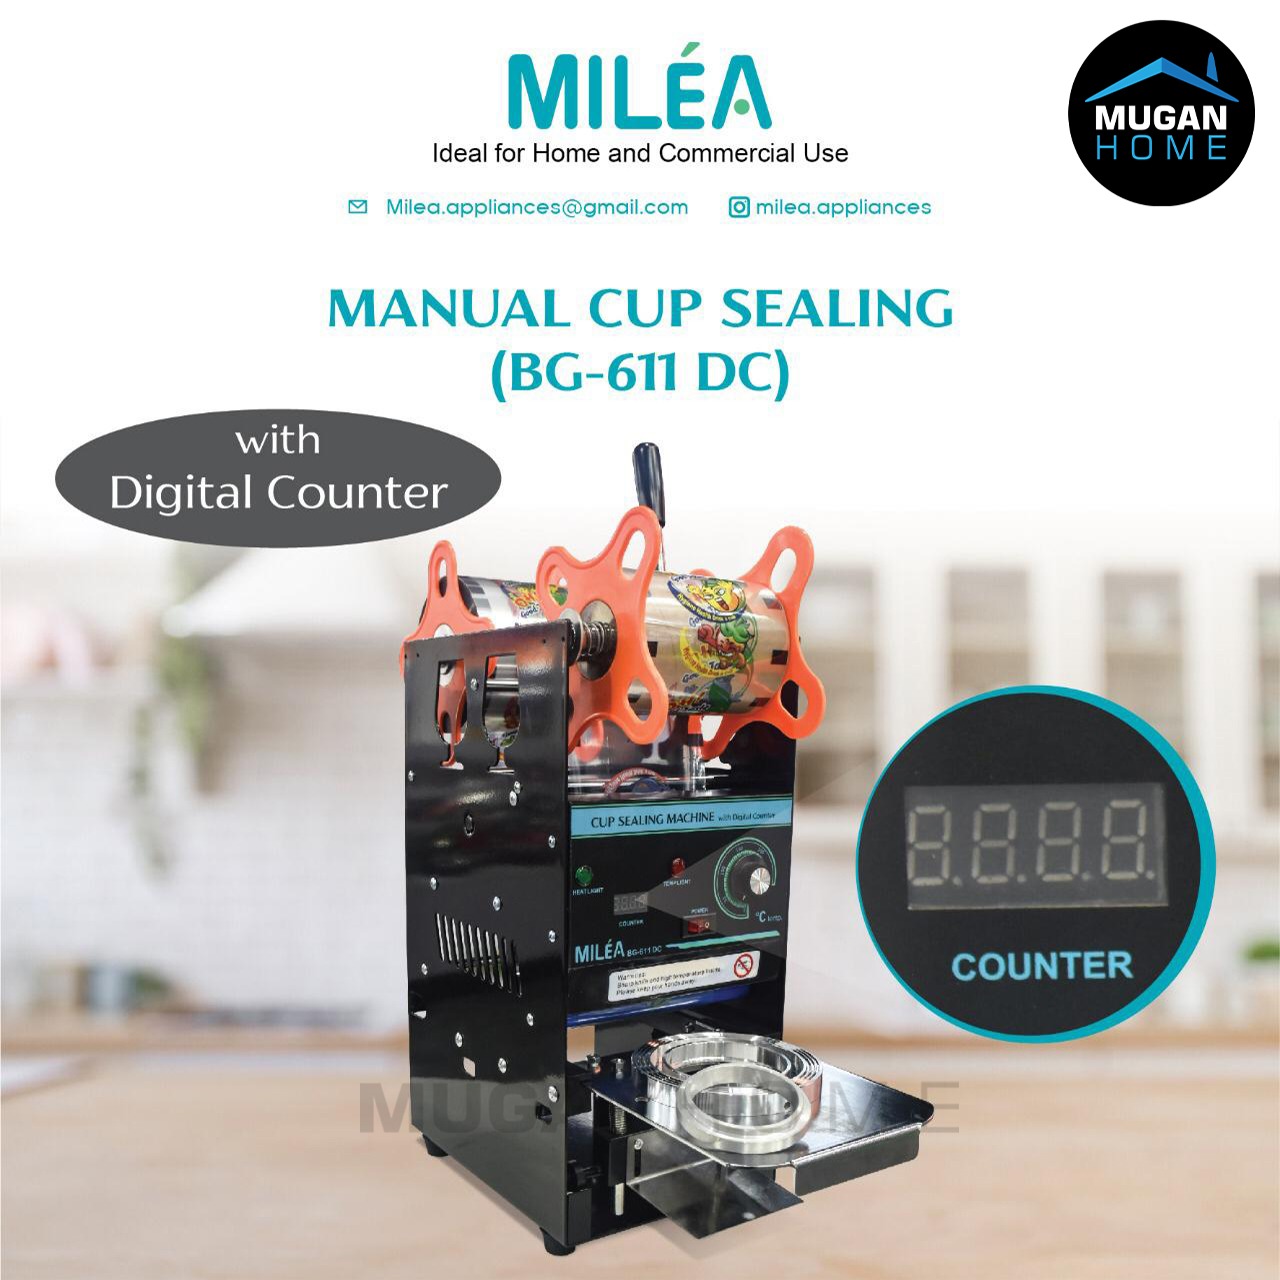 MILEA MANUAL CUP SEALING DIGITAL COUNTER BG-611DC